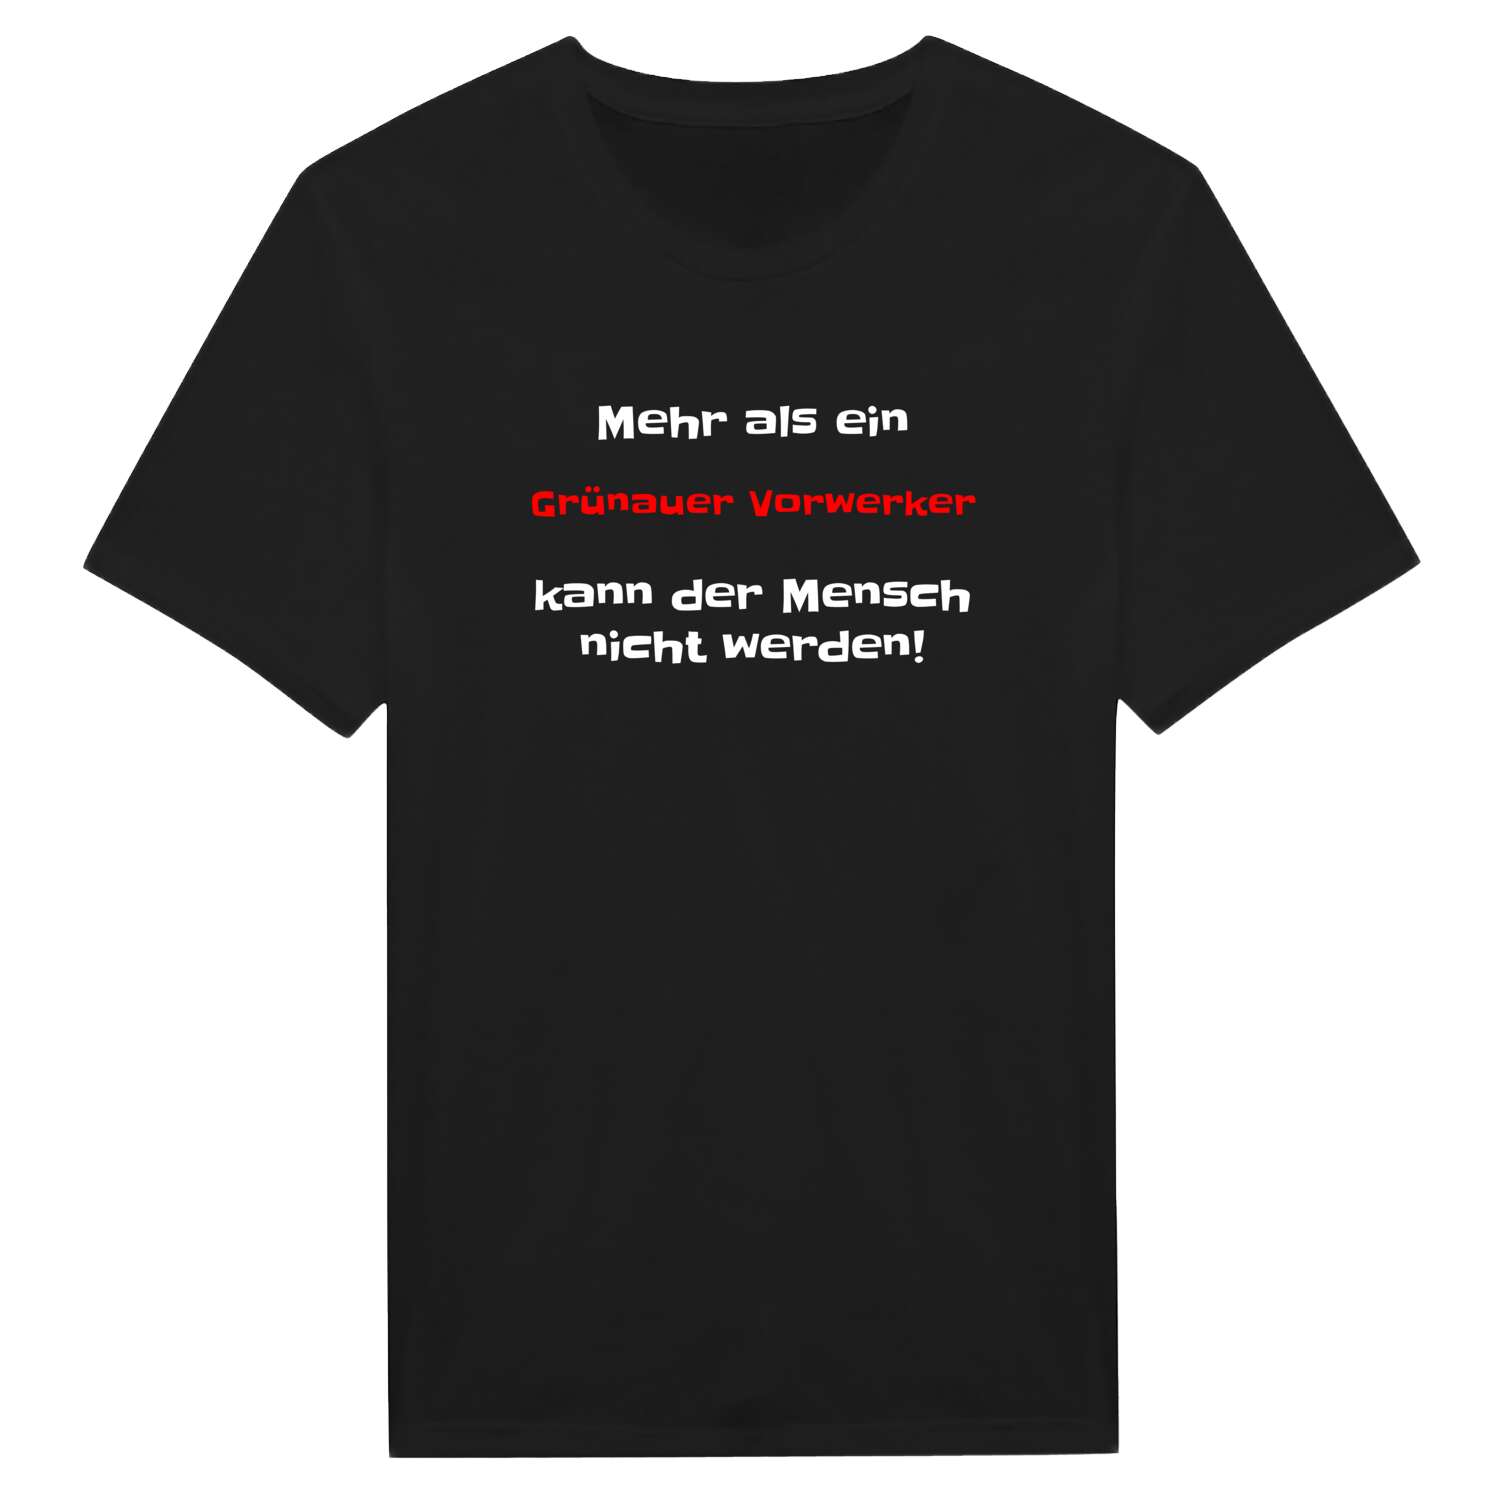 Grünauer Vorwerk T-Shirt »Mehr als ein«